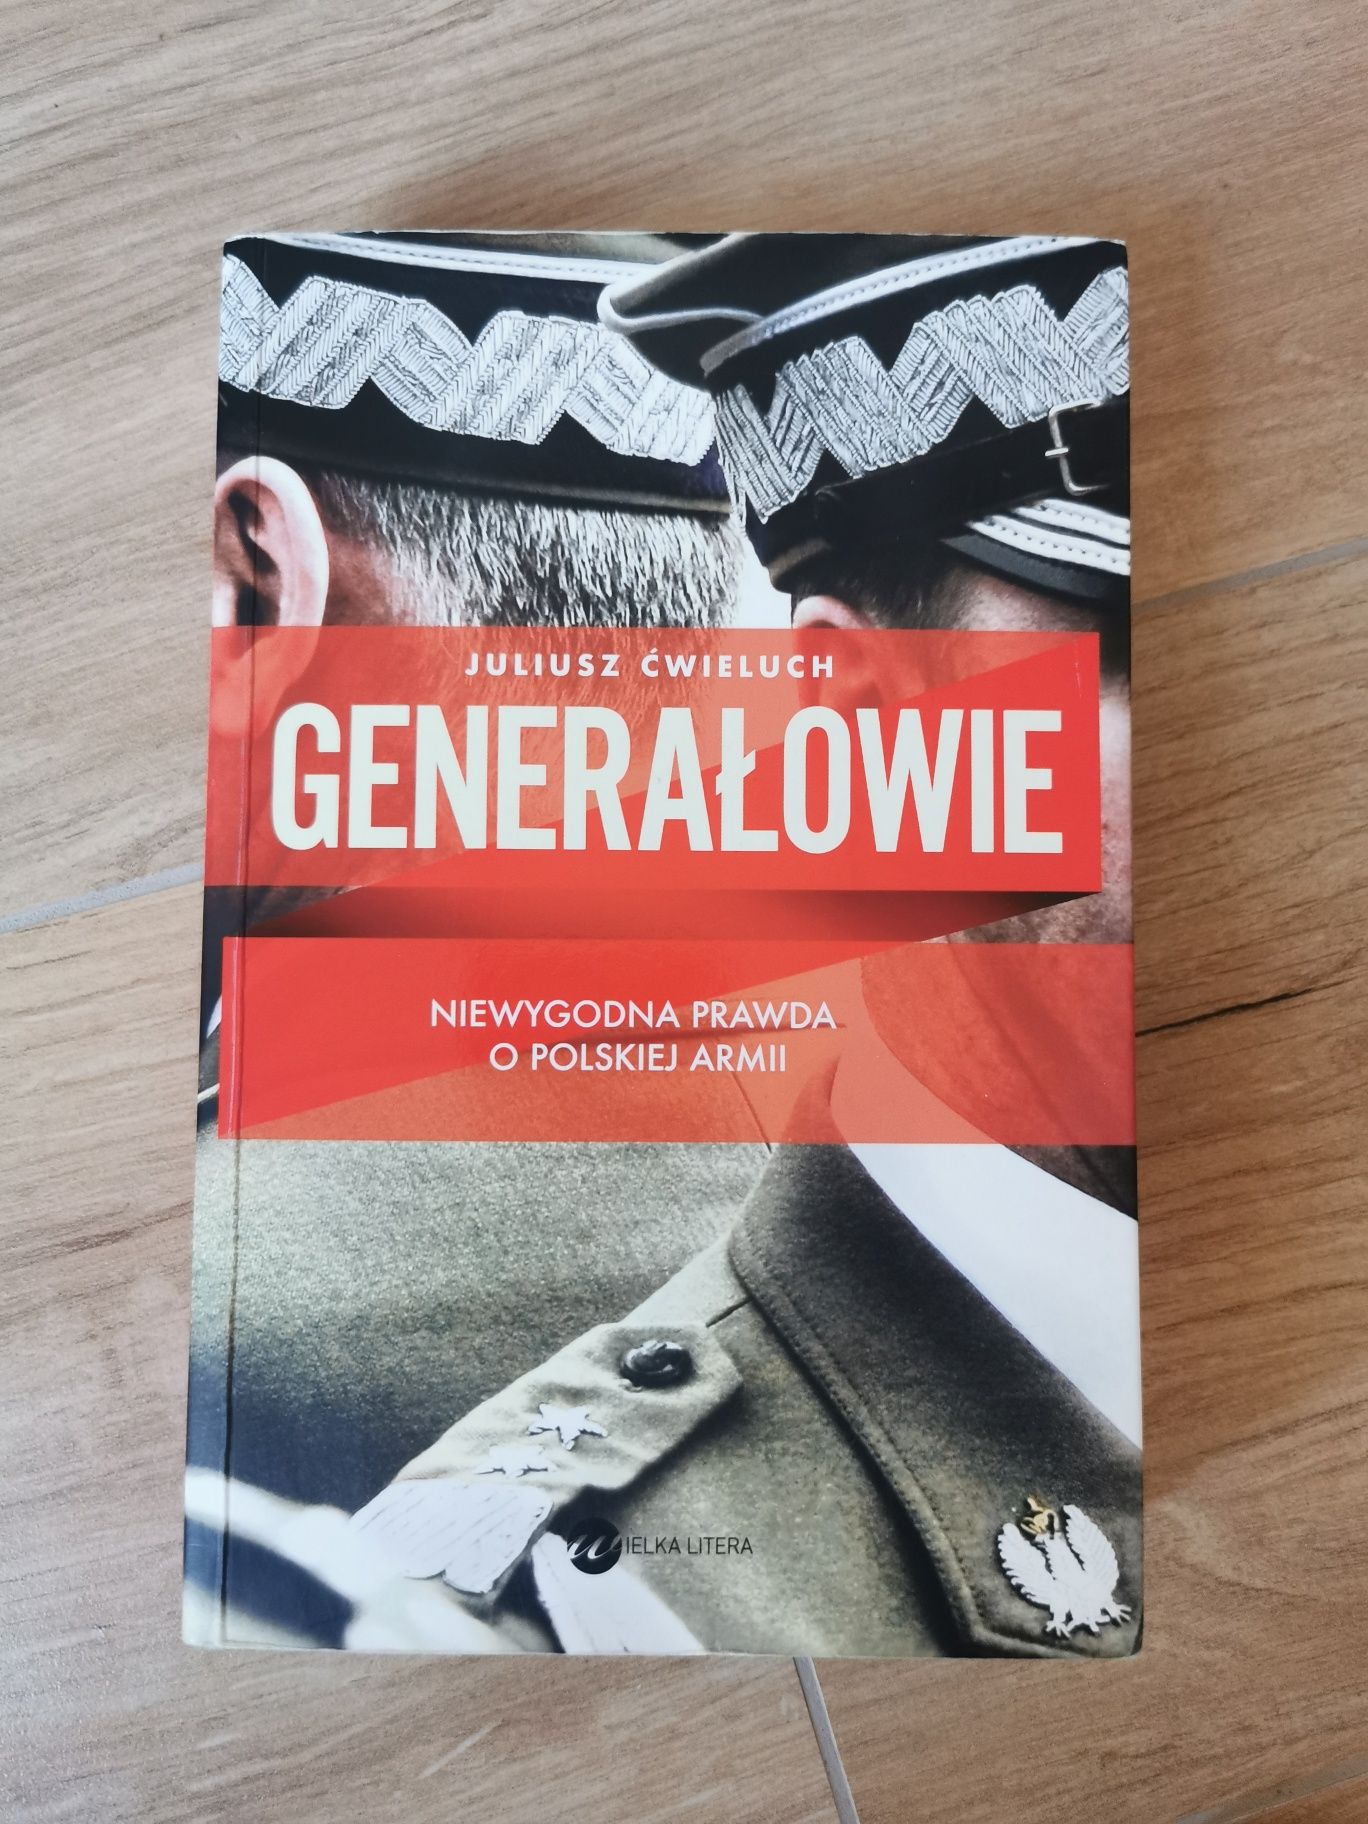 Książka Generałowie Niewygodna prawda o polskiej armi Juliusz Ćwieluch